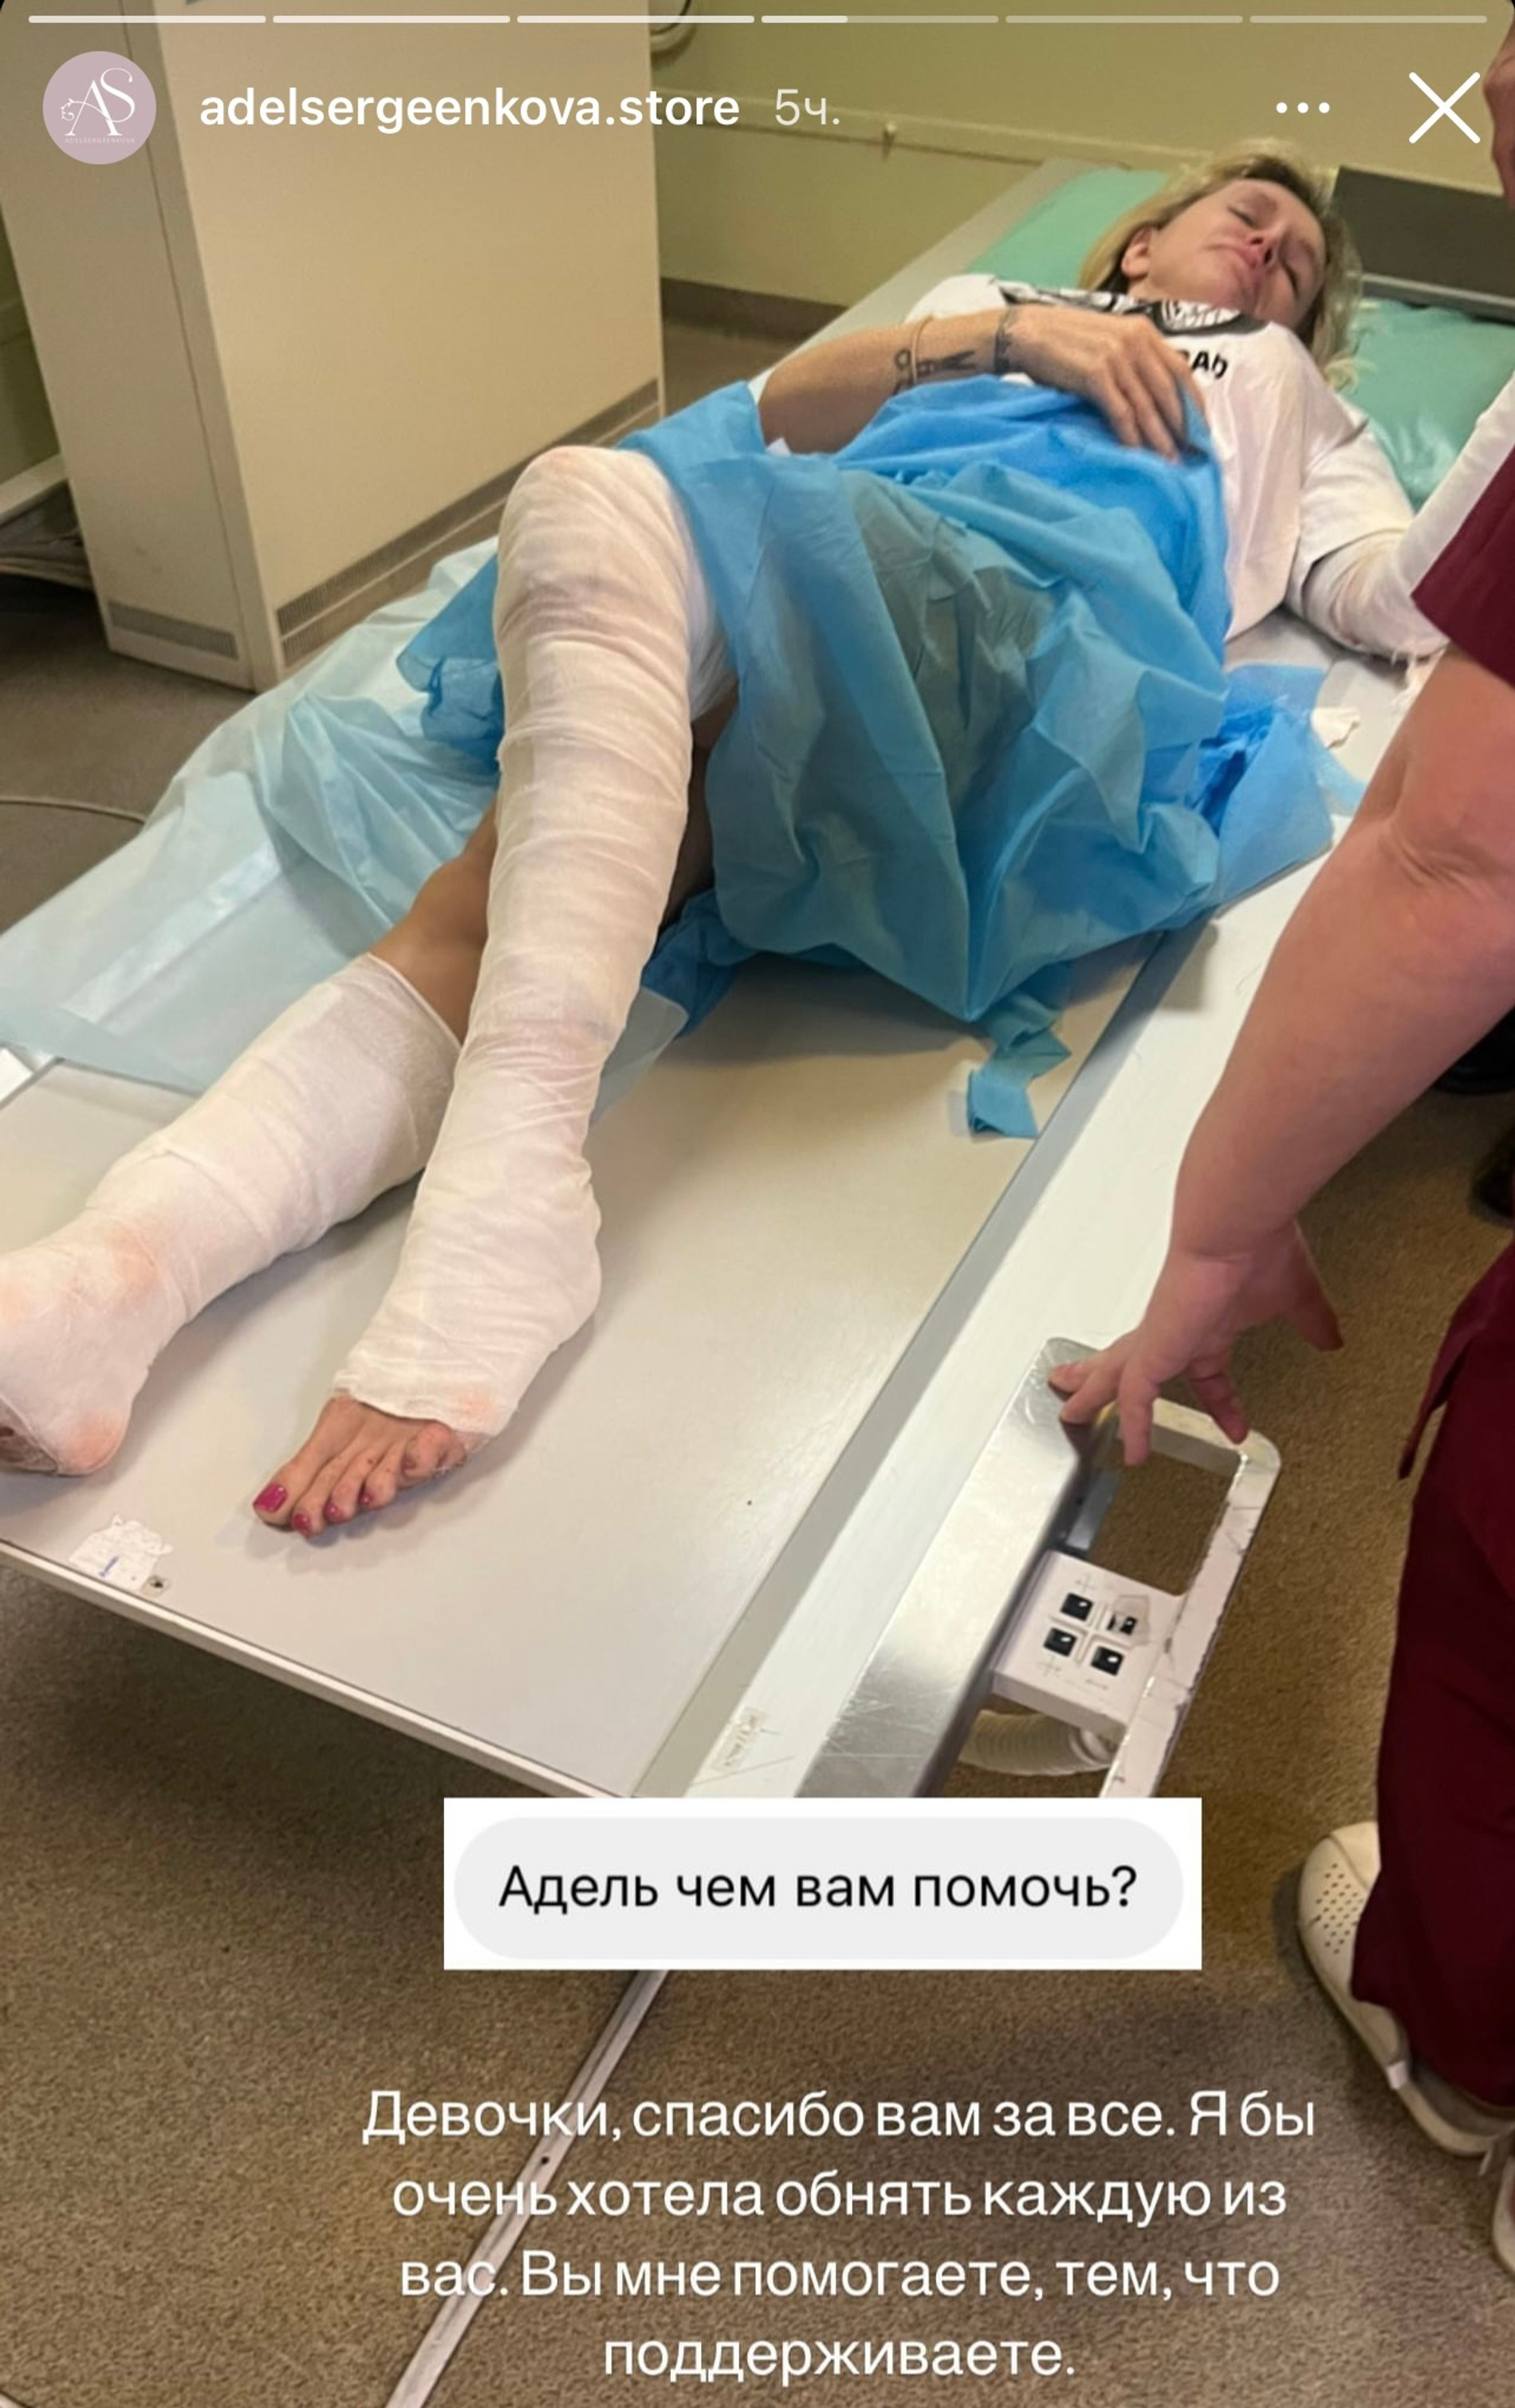 Адель Сергеенкова после аварии
Фото: Инстаграм (запрещен в РФ) @adelsergeenkova.store